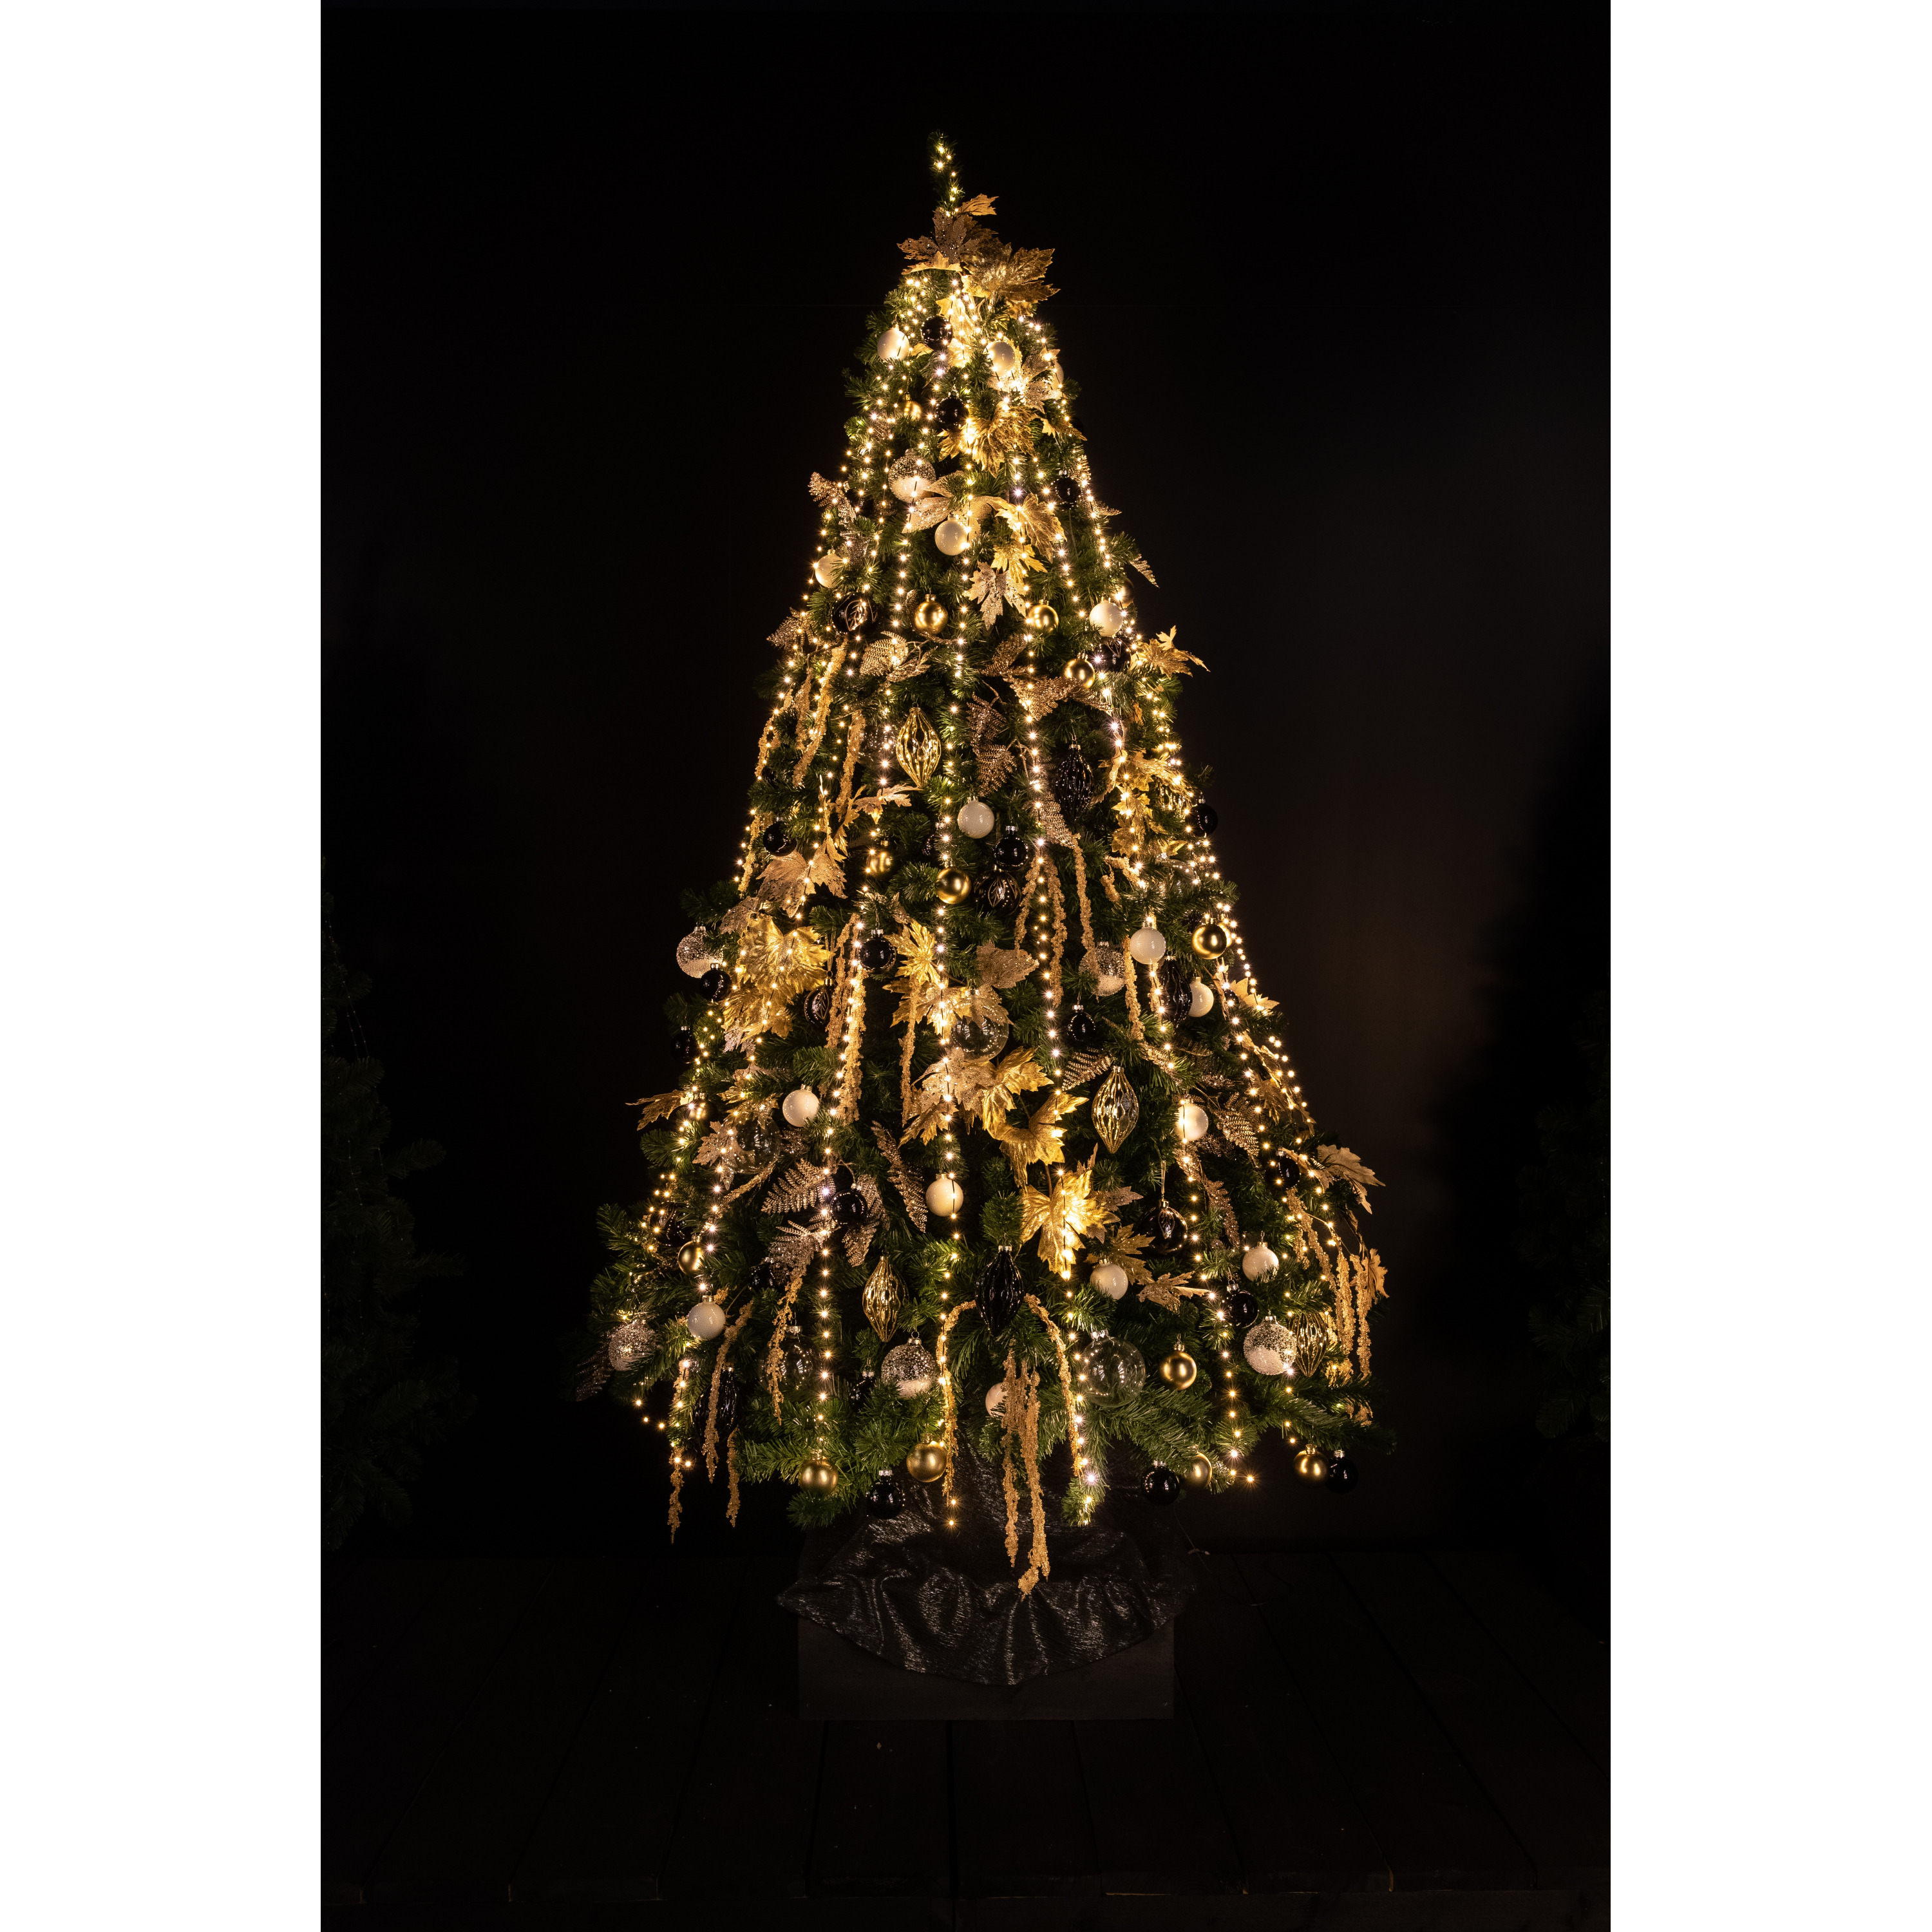 Cascade kerstverlichting -960 leds voor kerstboom van 210 cm